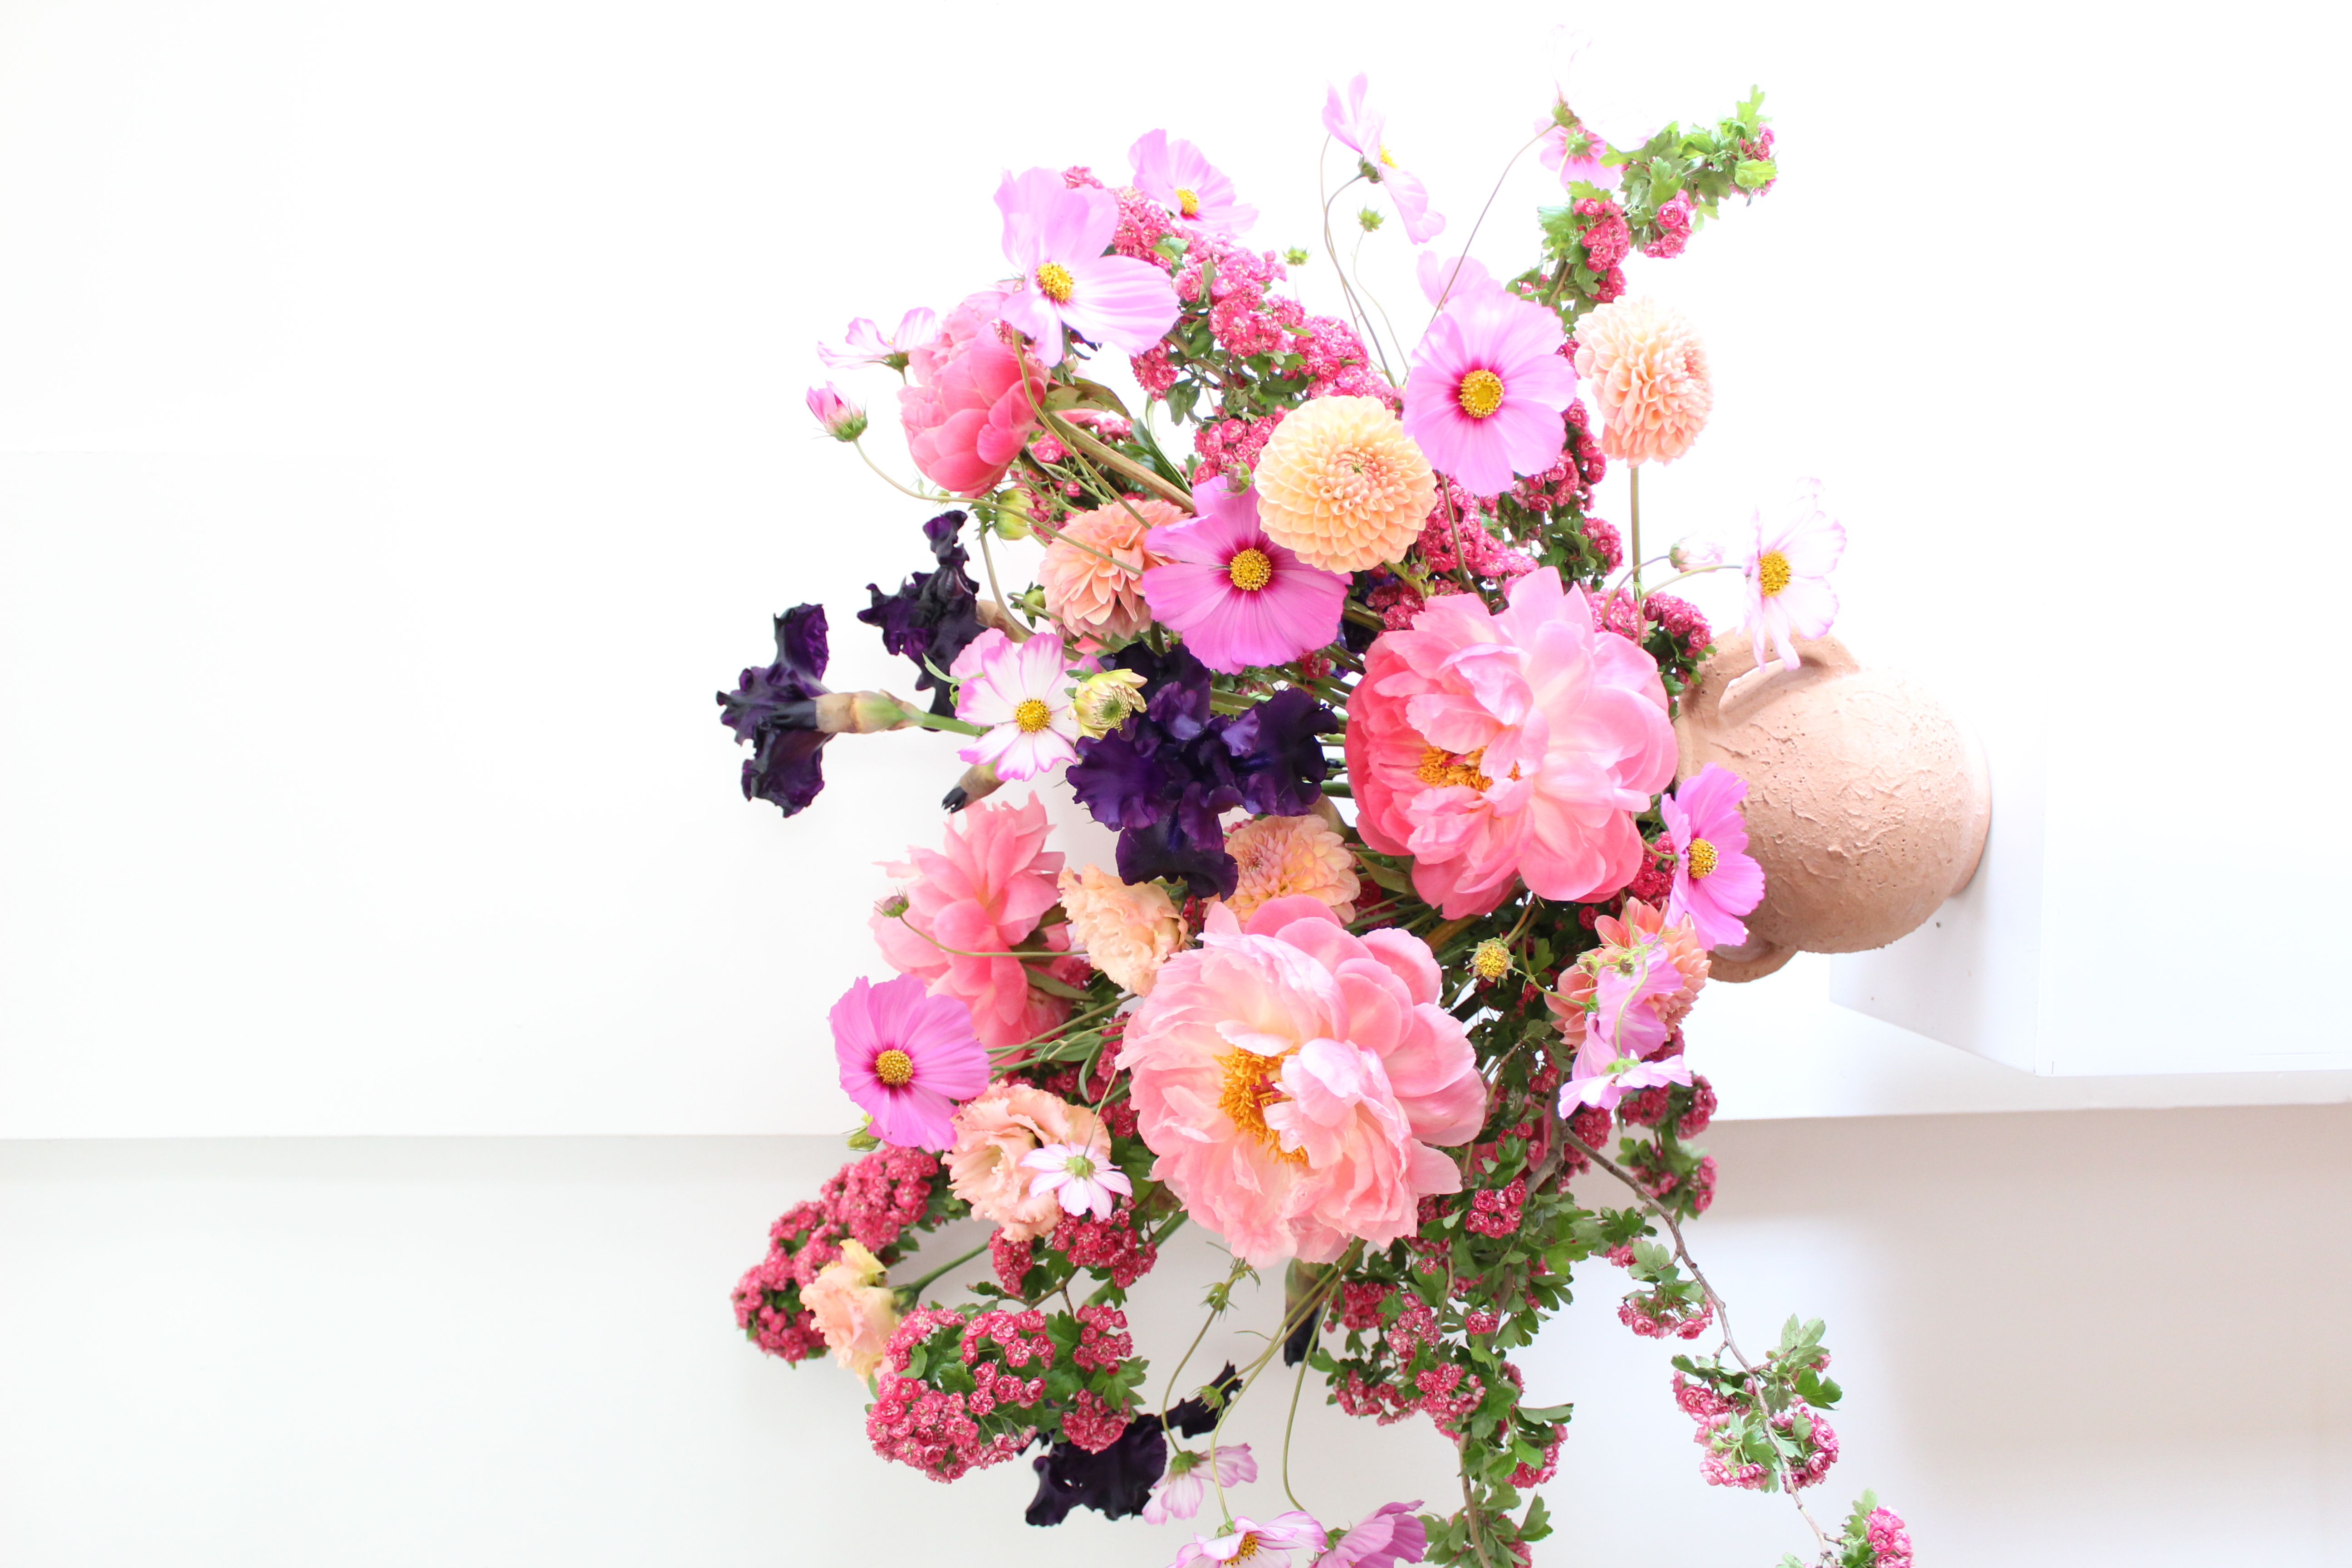 8 Summer Flower Arrangement Ideas - Summer Floral Design